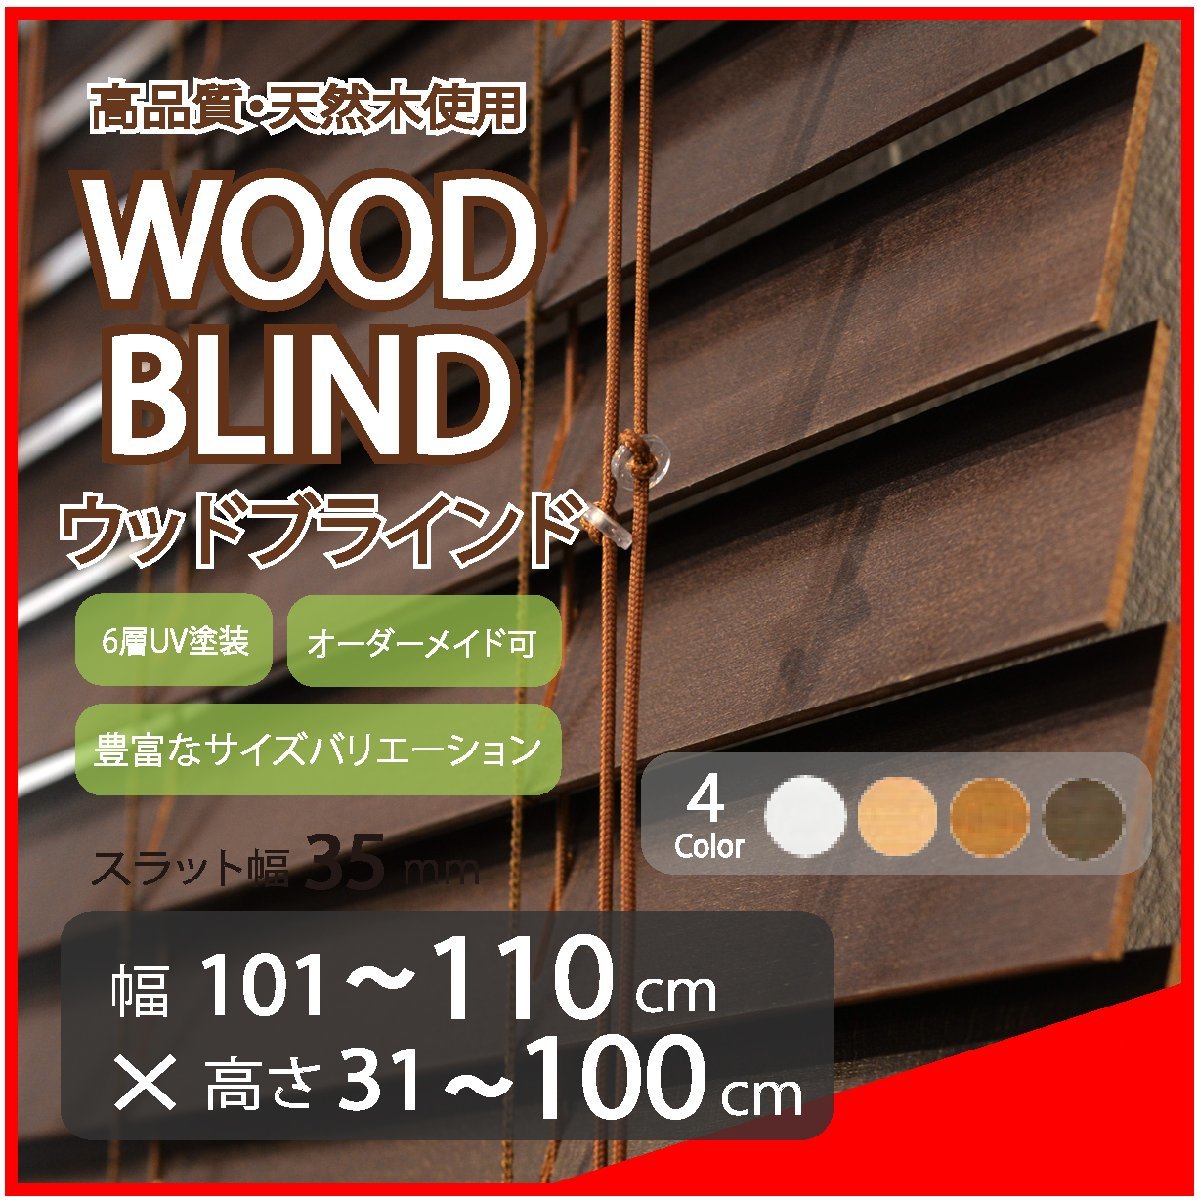 窓枠に合わせてサイズ加工が可能 高品質 木製 ウッド ブラインド オーダー可 スラット(羽根)幅35mm 幅101～110cm×高さ31～100cm